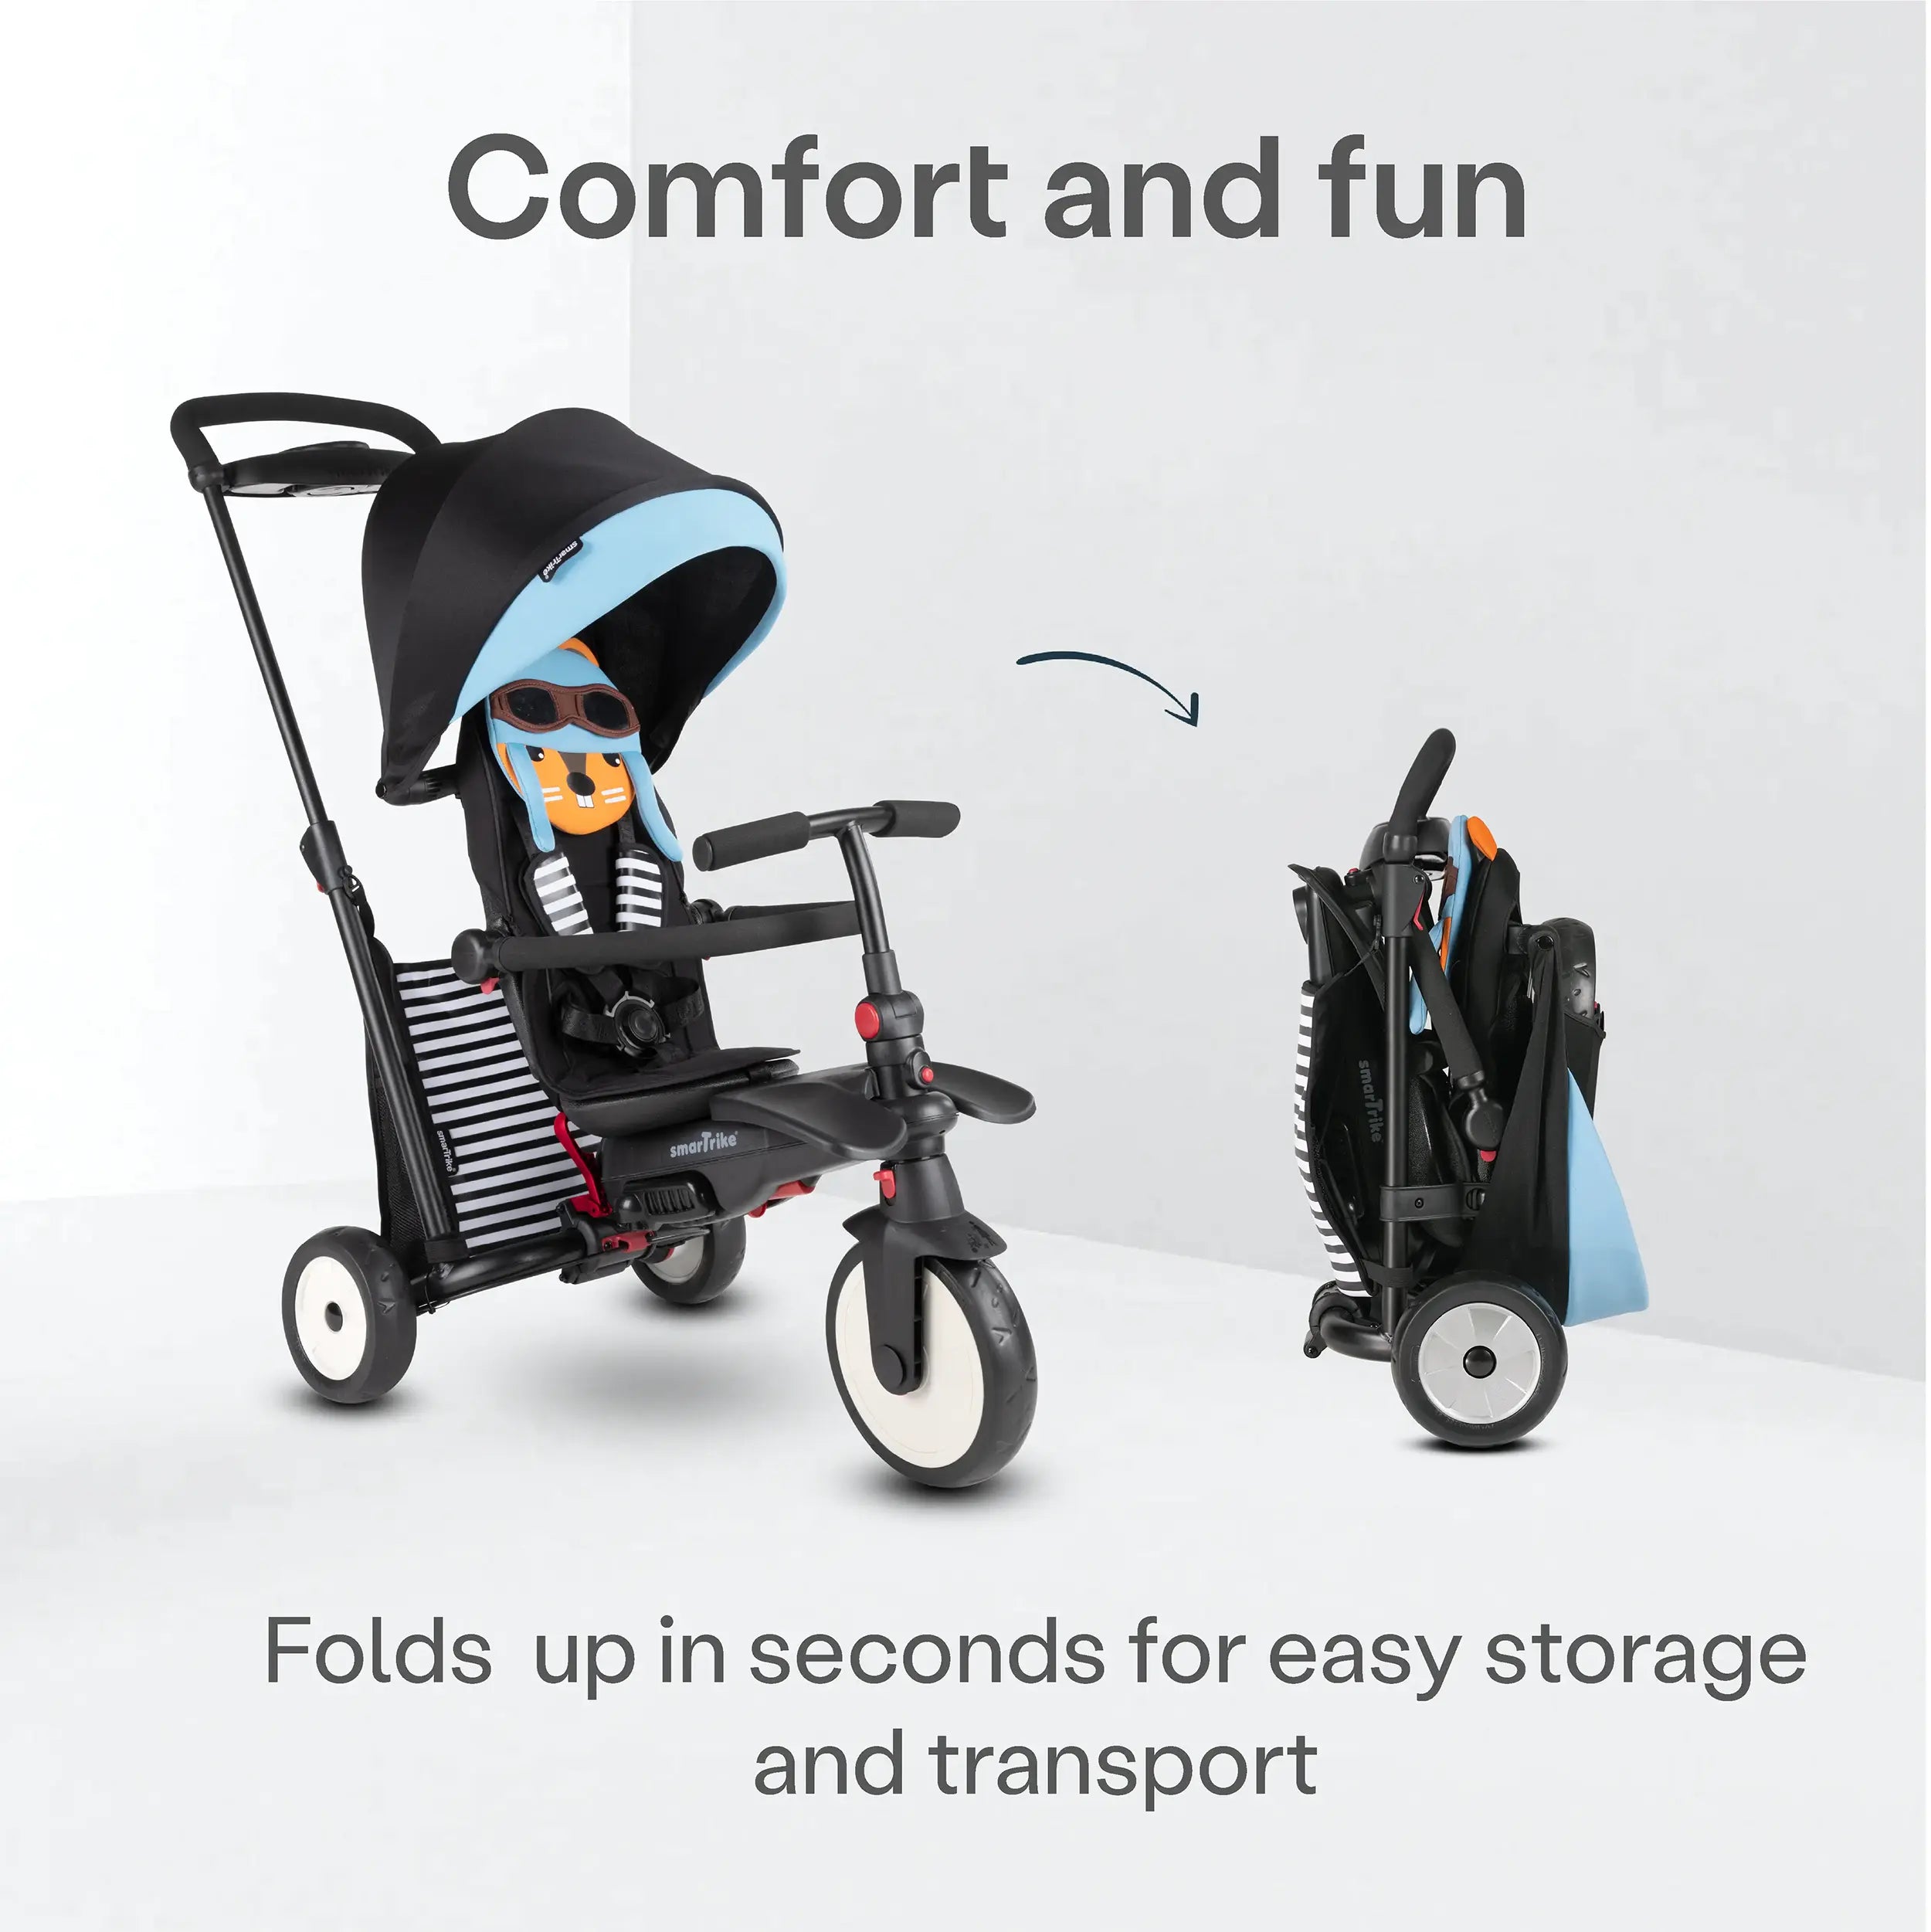 6-in-1 STR5 Folding Stroller Trike